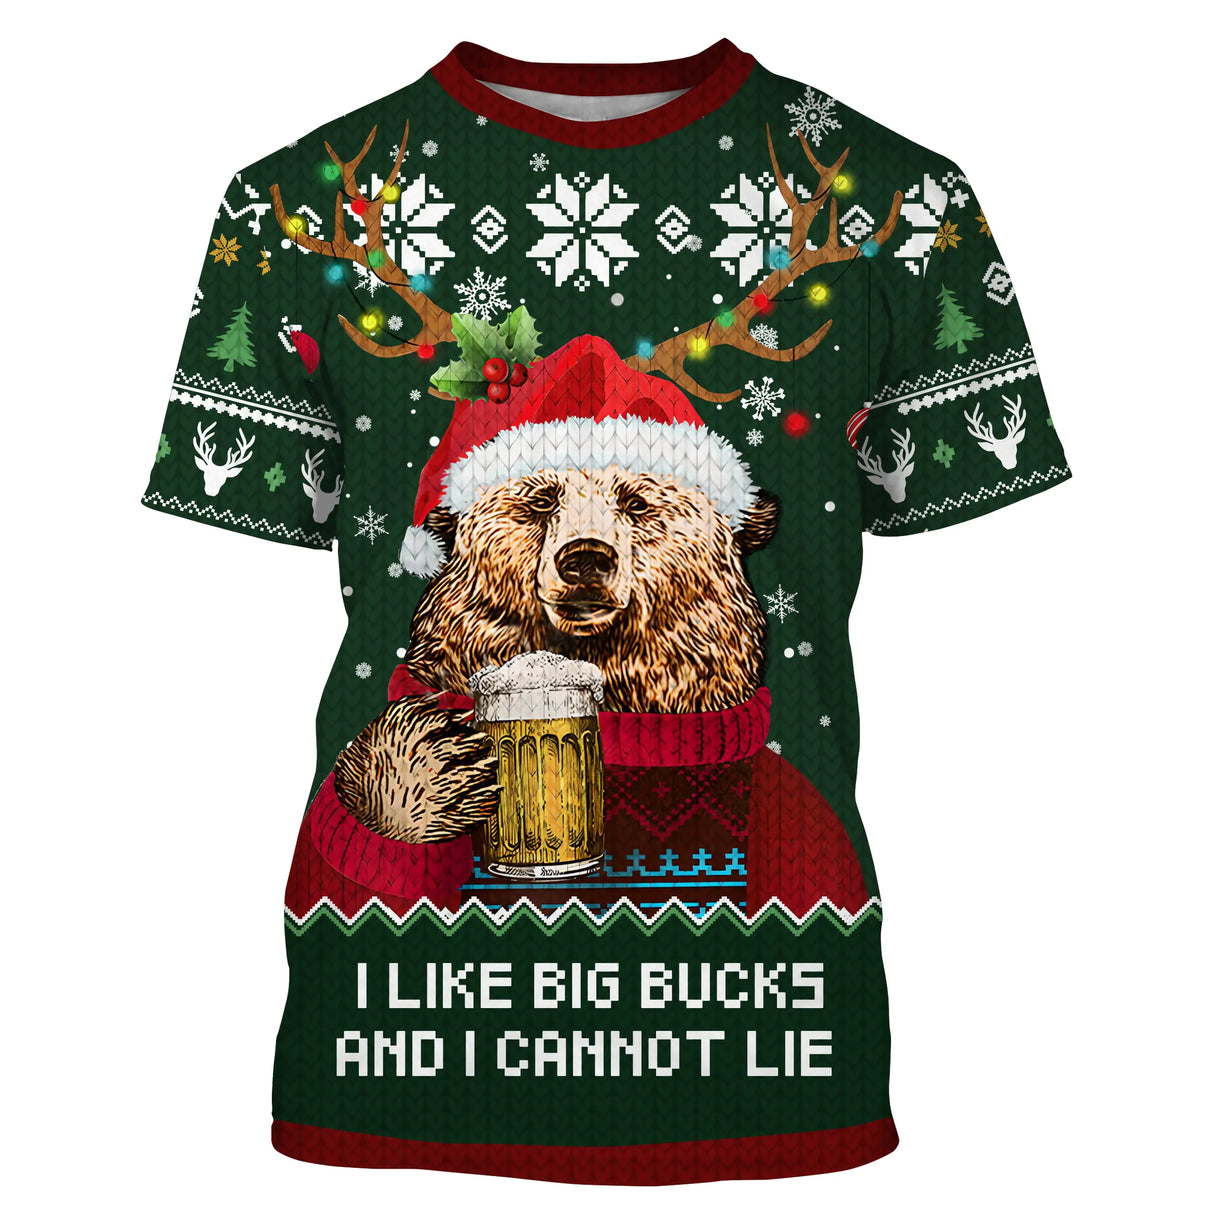 Maglione natalizio verde, orso beve birra, modello Mi piace Big Bucks, regalo di Natale in famiglia - CT07112237